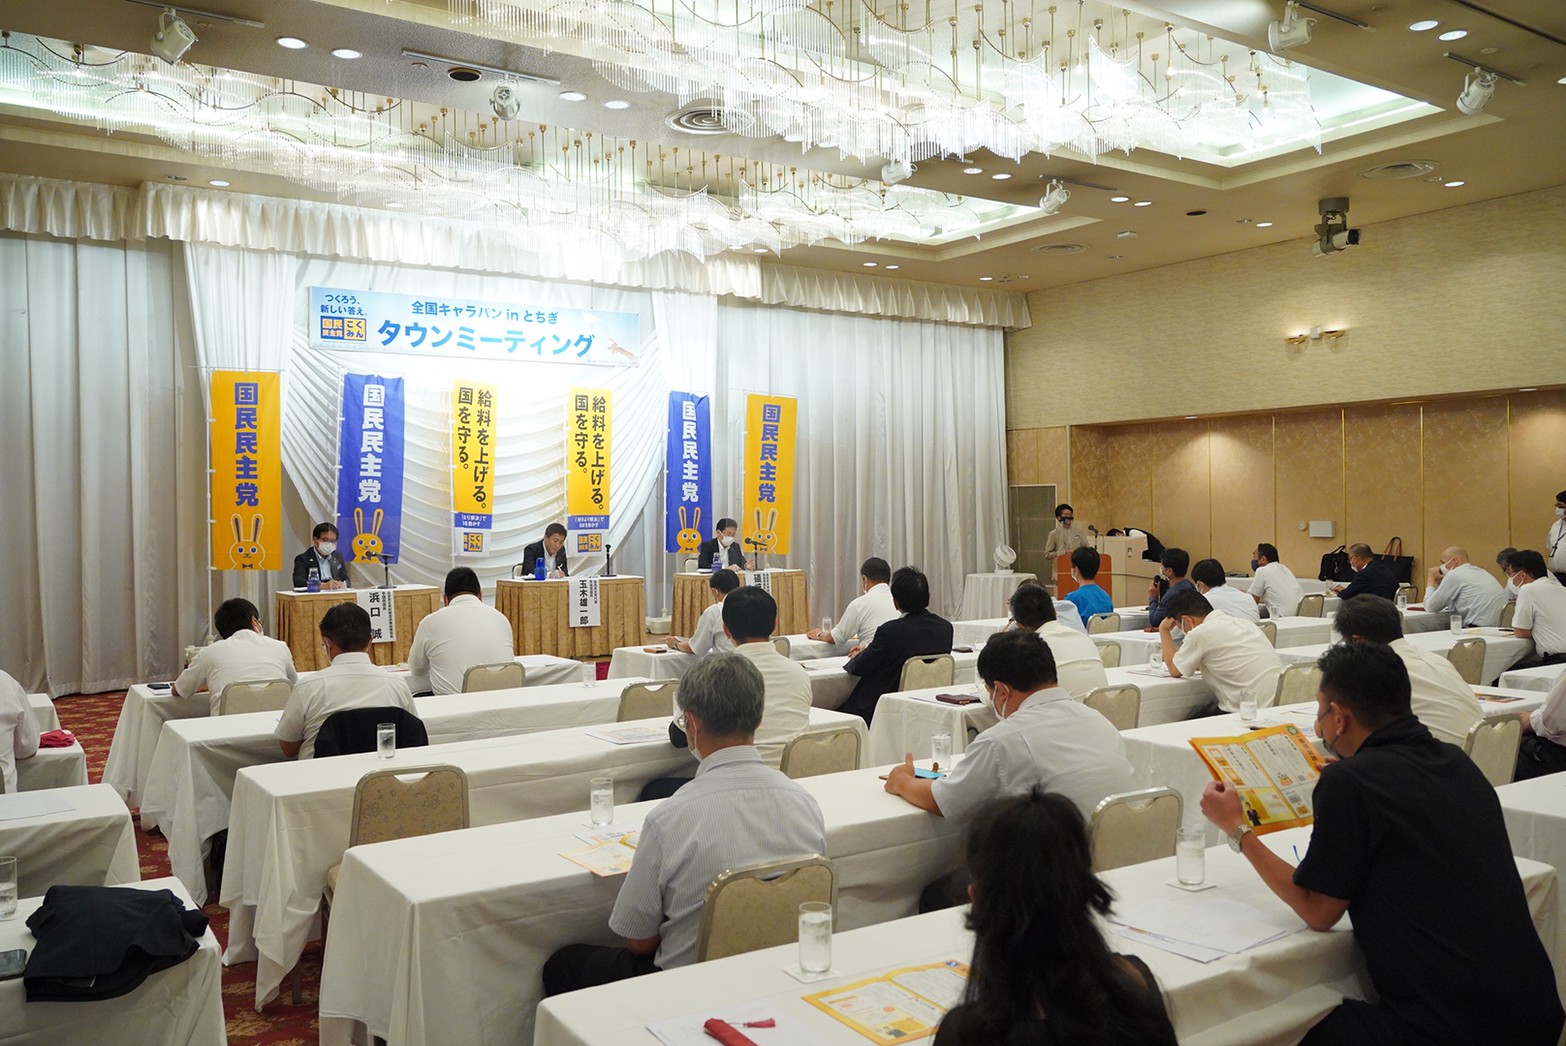 【栃木】「『誰もが豊かさを実感できる』そんな社会を取り戻したい」玉木代表が全国キャラバンで栃木県を訪問